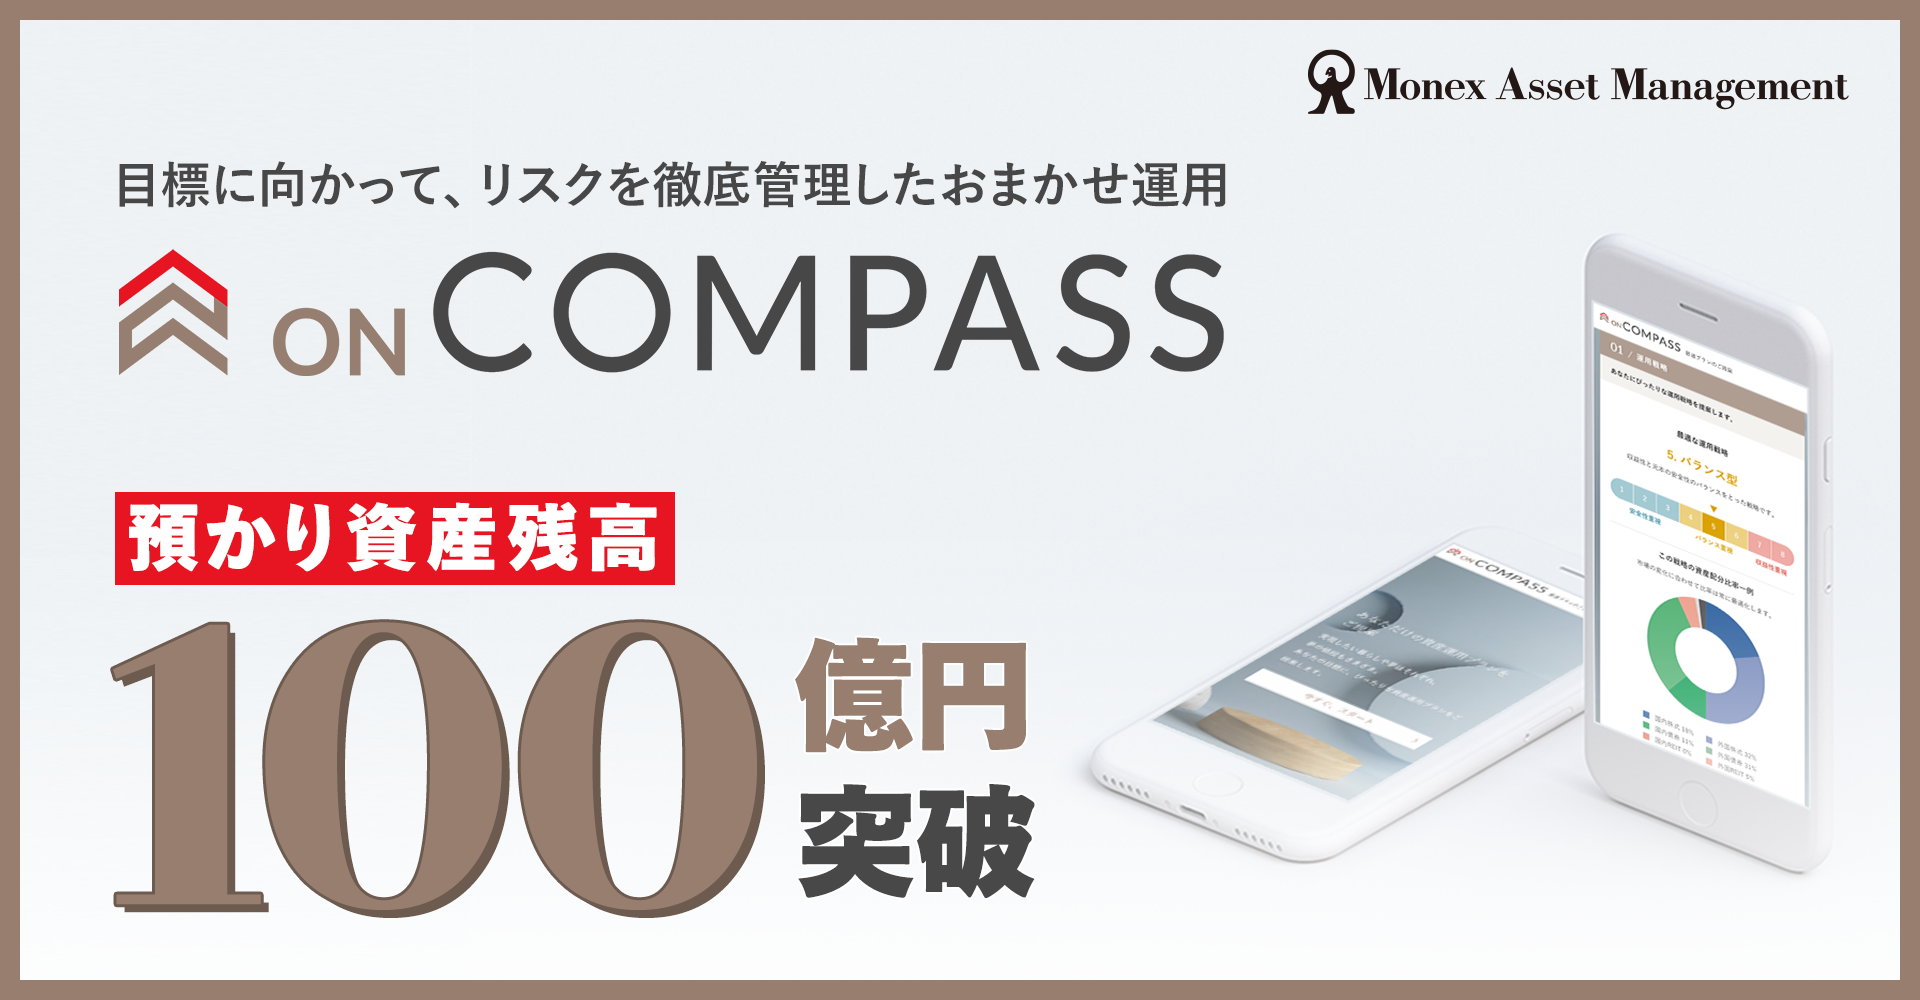 おまかせ資産運用「ON COMPASS」預かり資産残高が100億円を突破